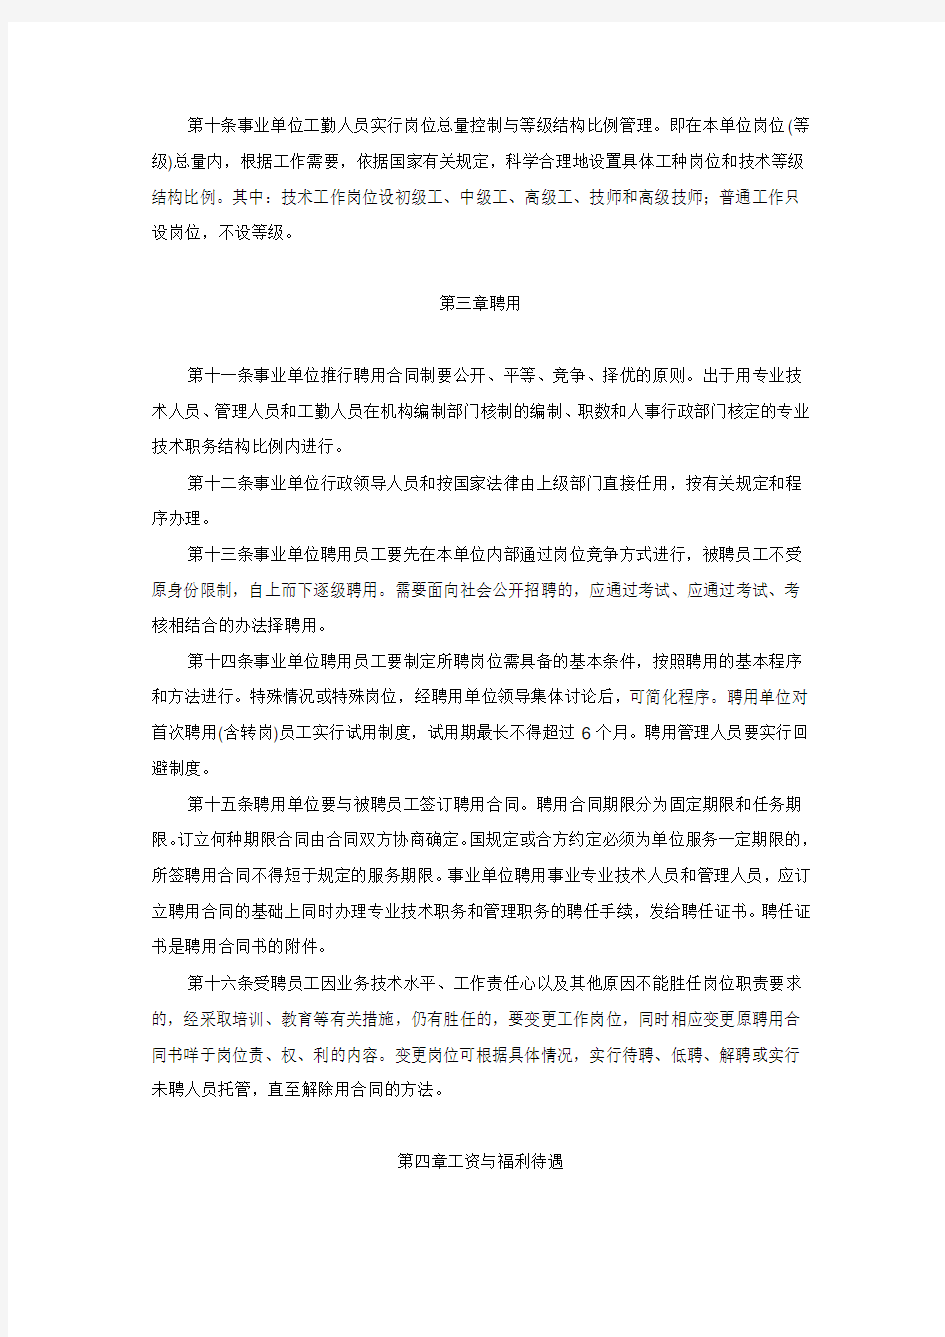 黑龙江省事业单位人事管理办法